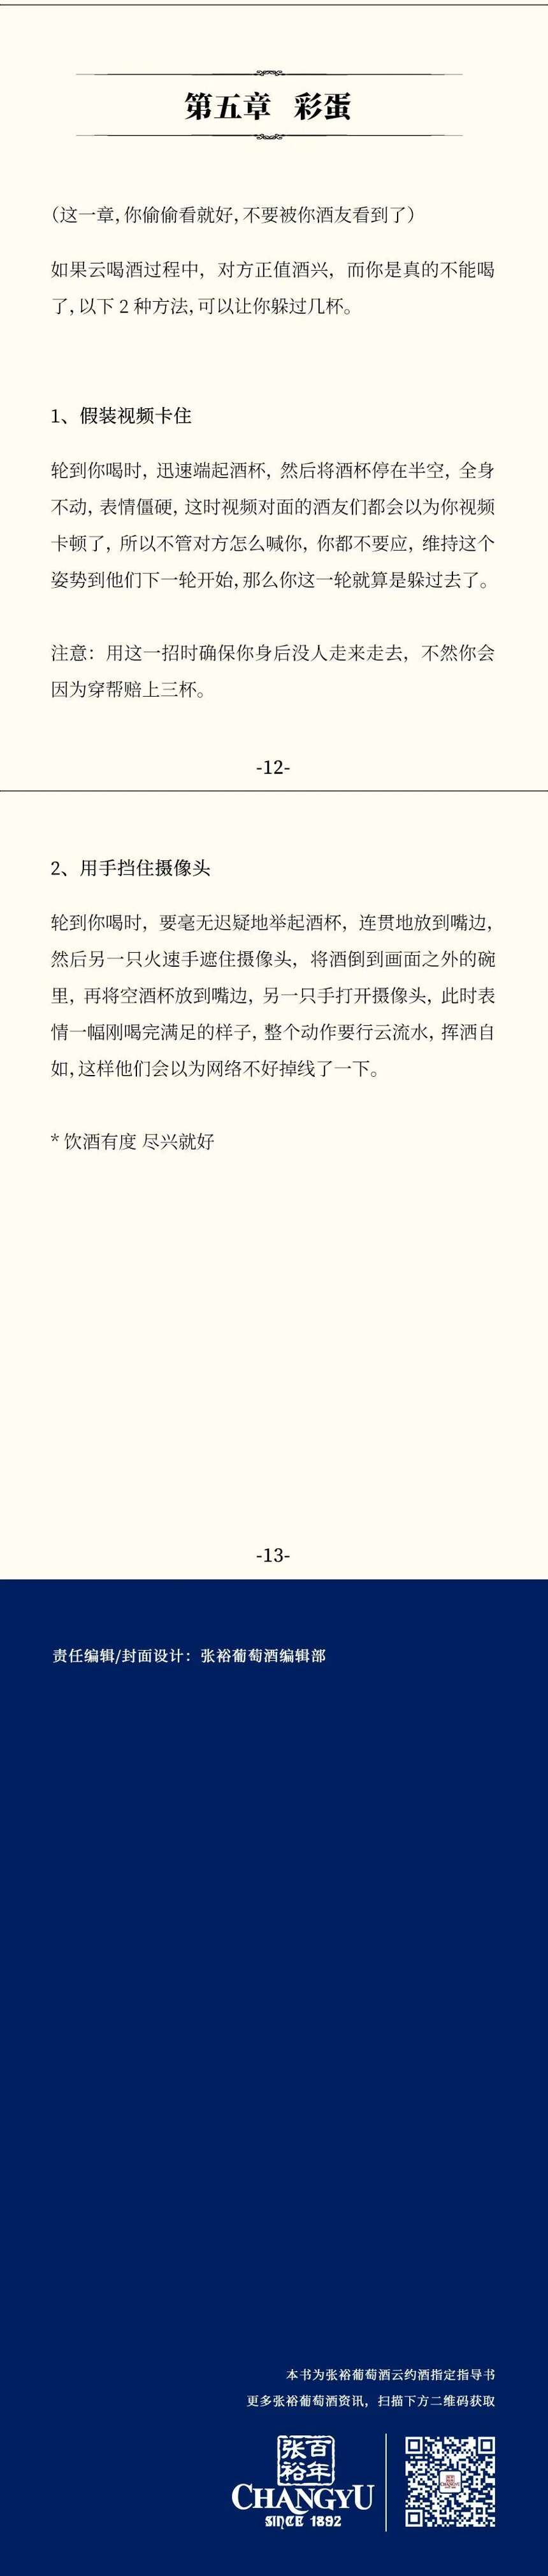 全网最火云约酒操作手册.pdf